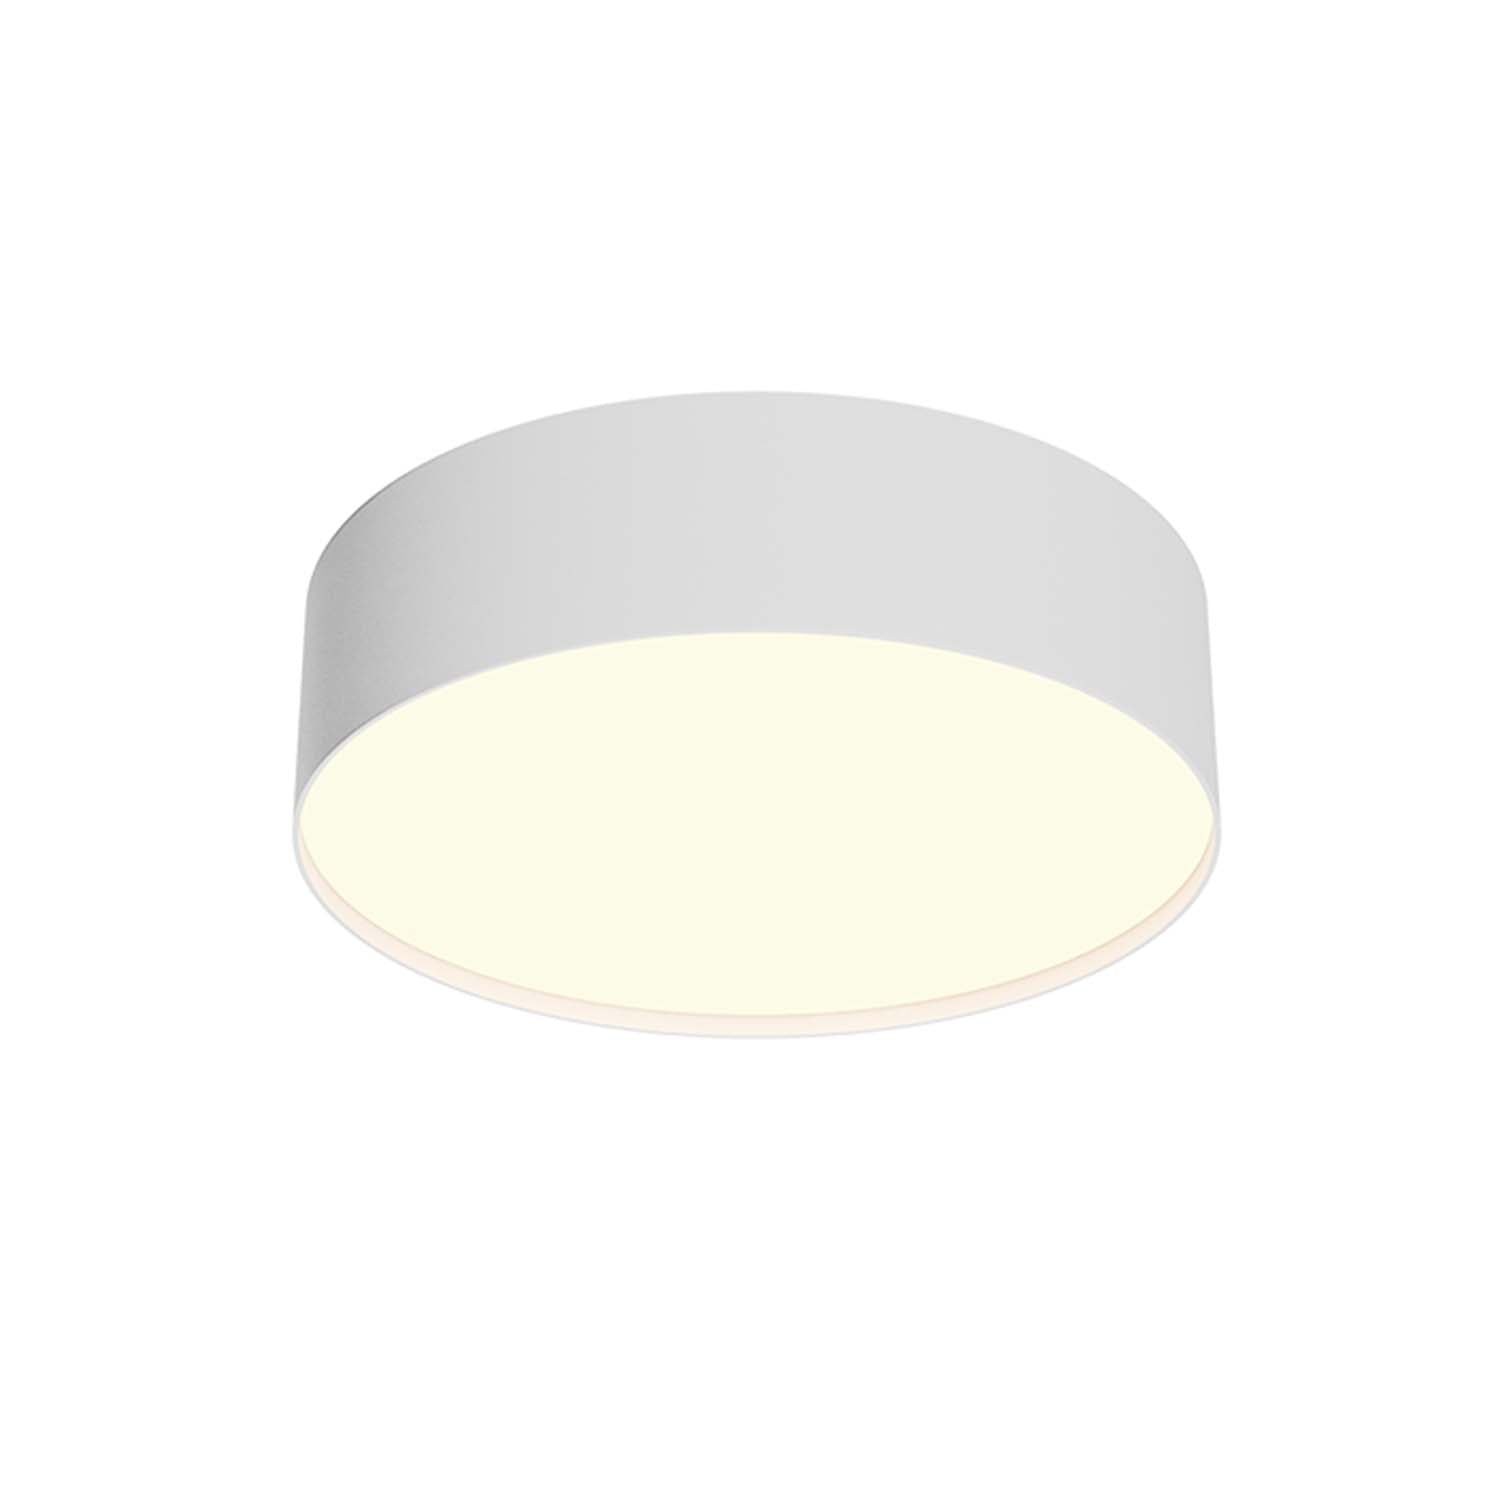 ZON – Designer- und minimalistische integrierte LED-Deckenleuchte